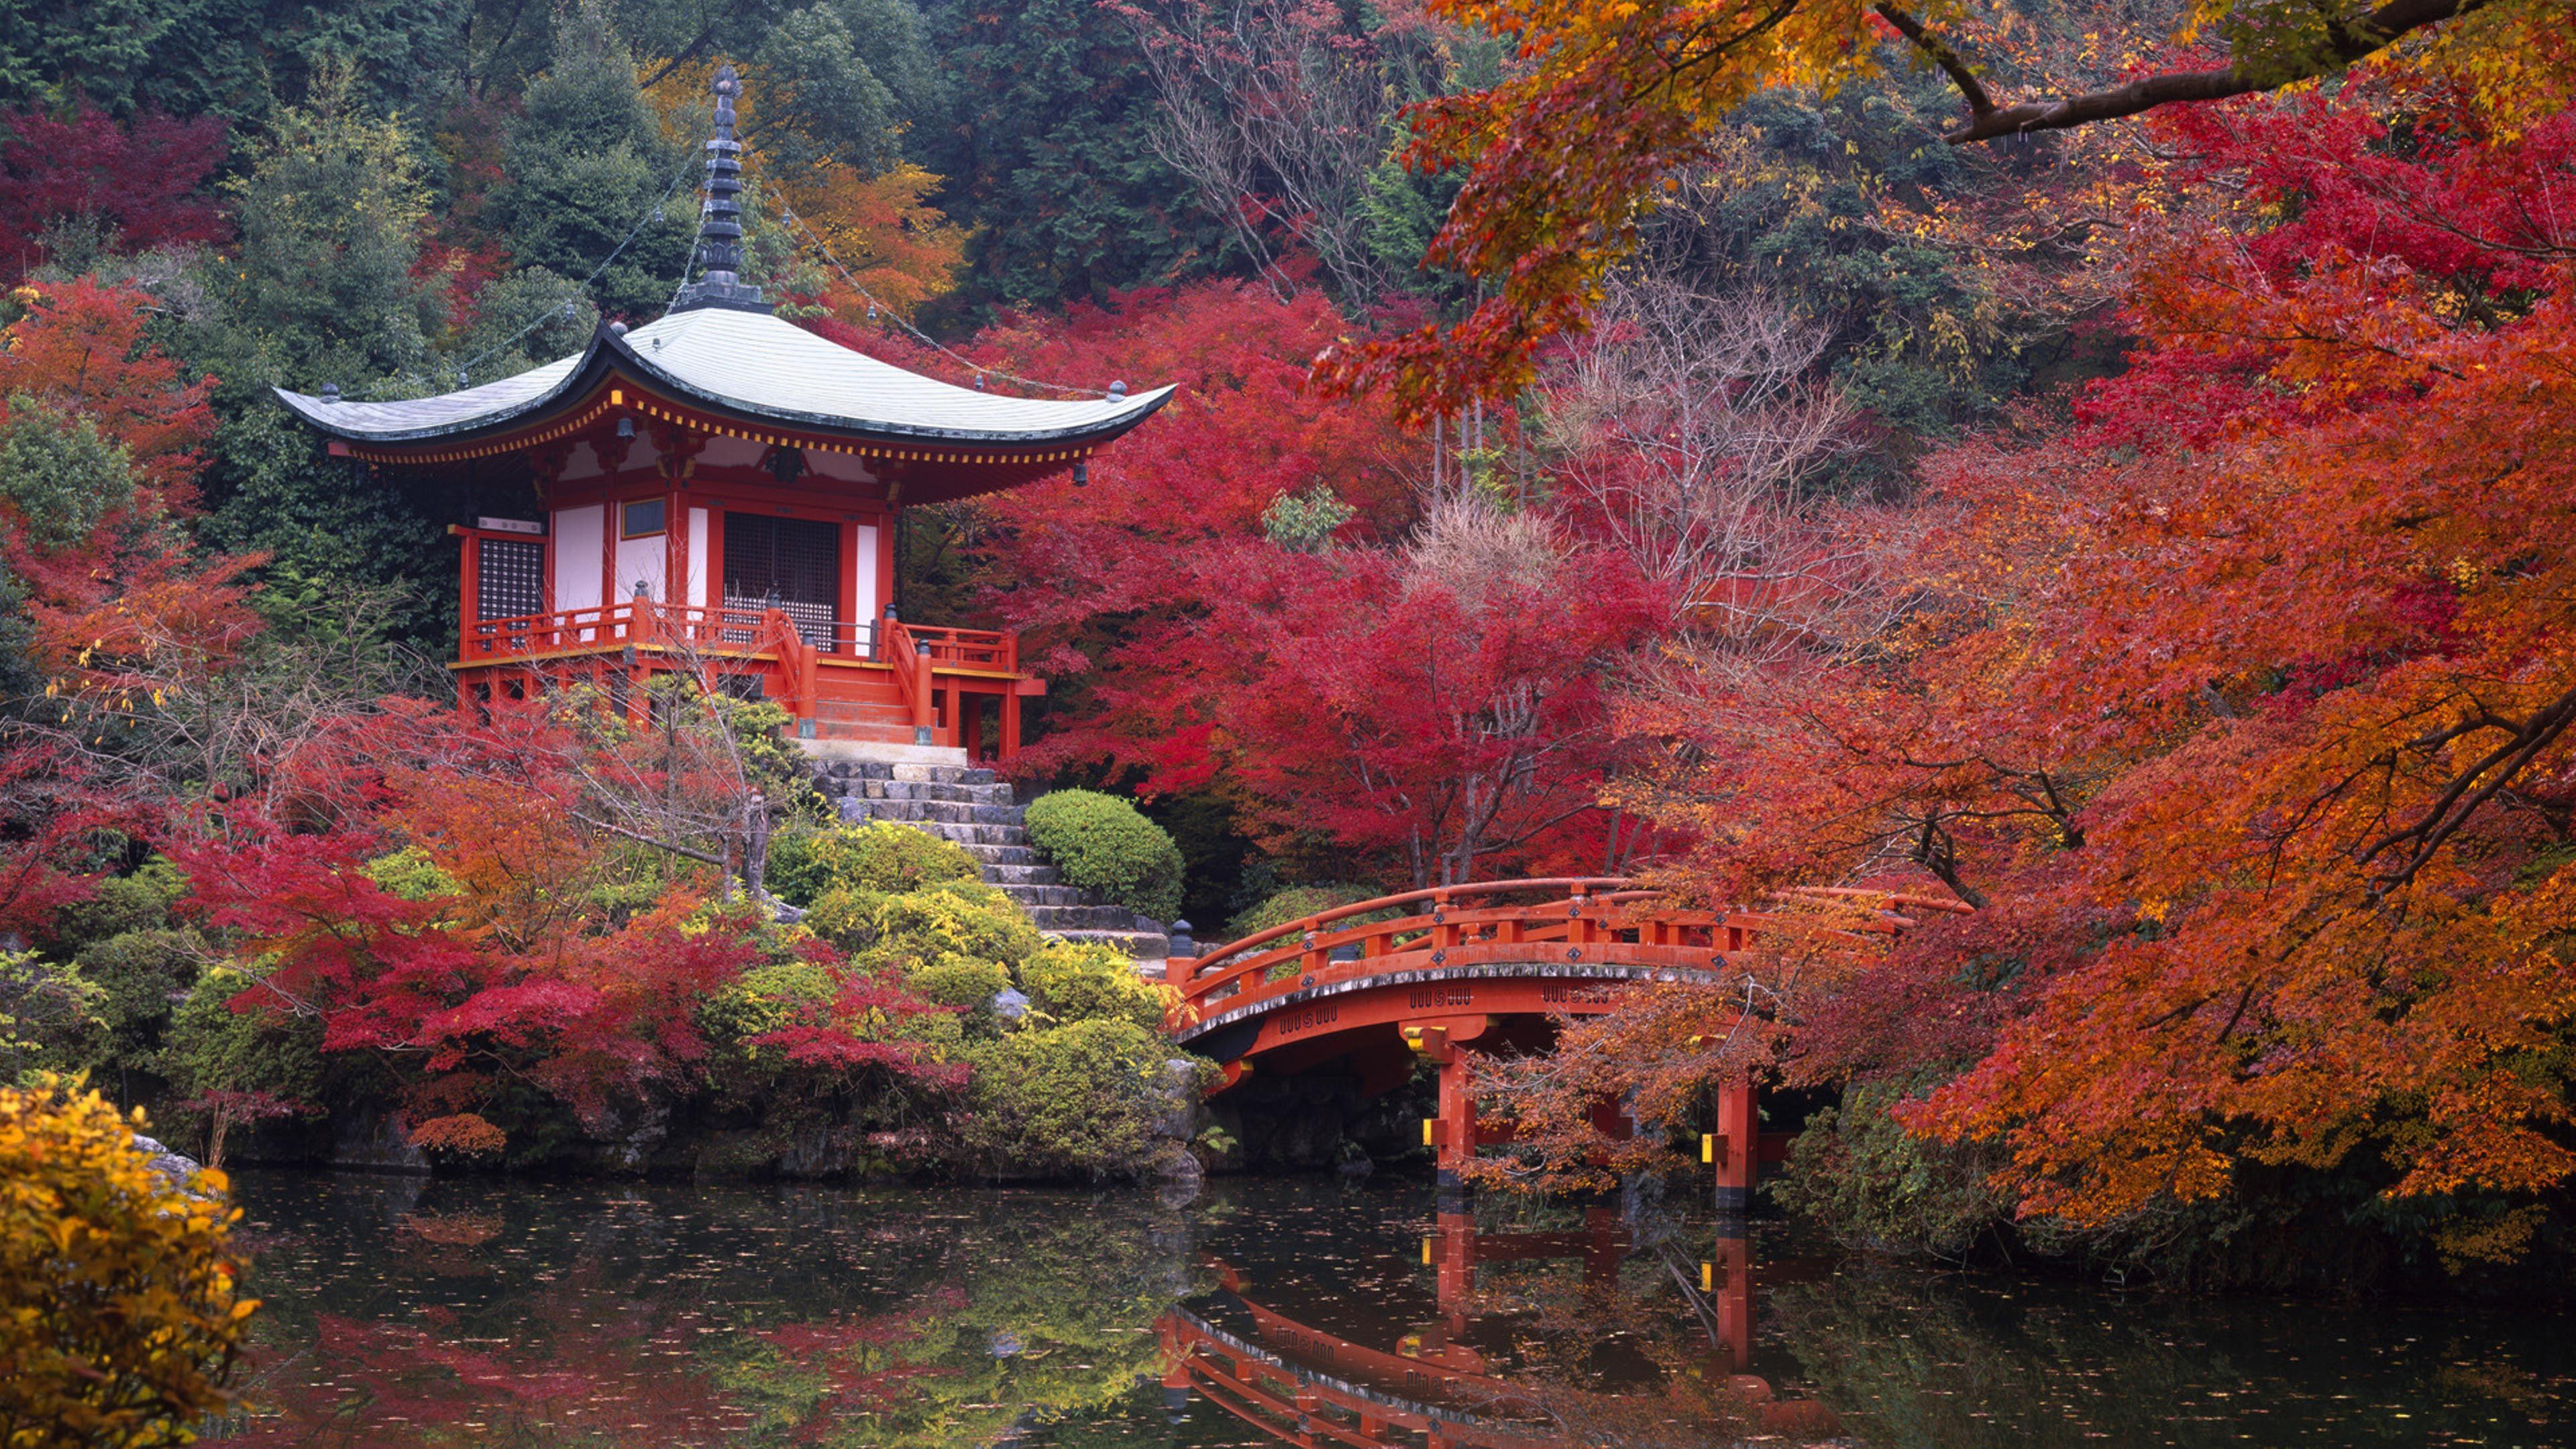 3840 x 2160 · jpeg - Japanese House and Garden autumn Wallpaper Download 3840x2160